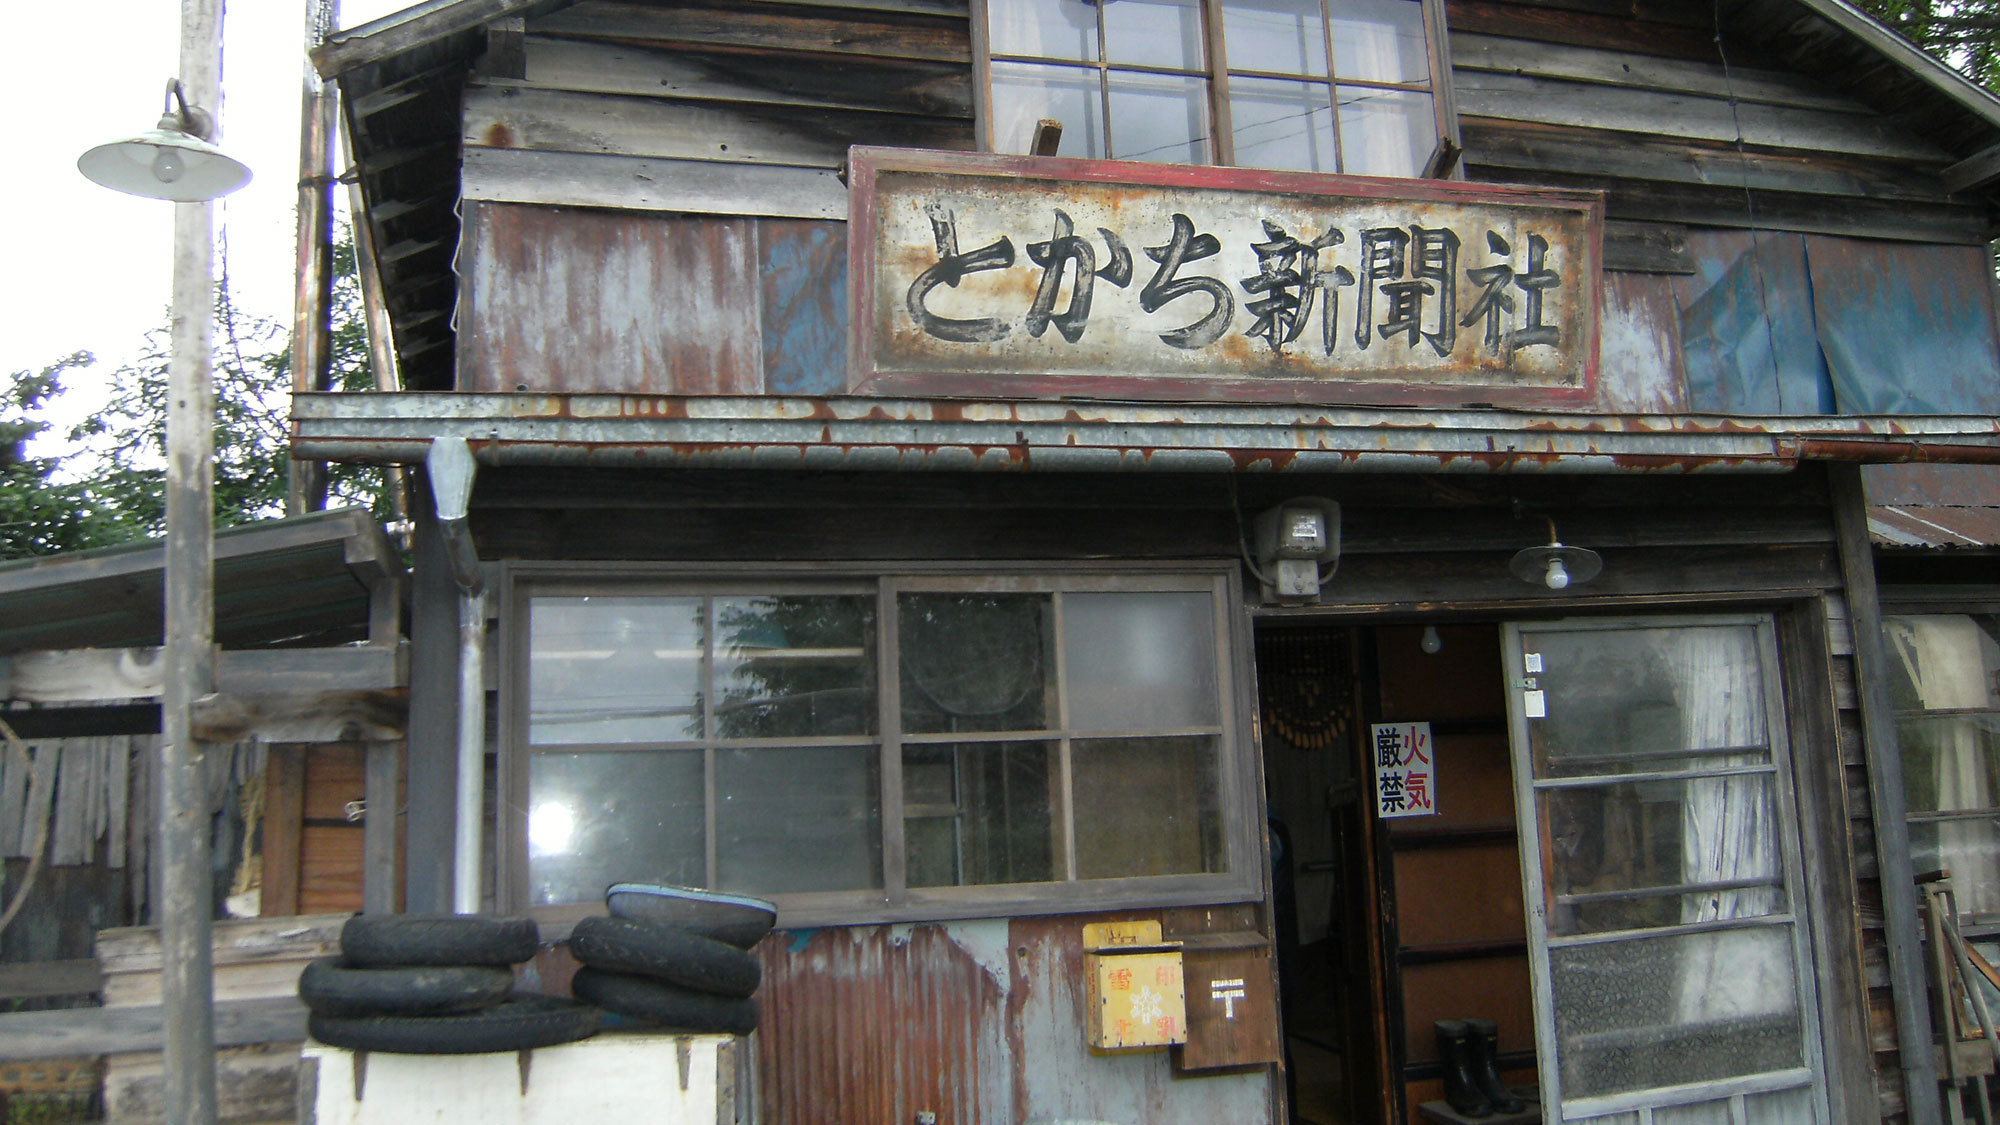 足寄町出身の歌手松山千春さんの青春期を描いた映画「旅立ち〜足寄より」に使用されたロケセット。